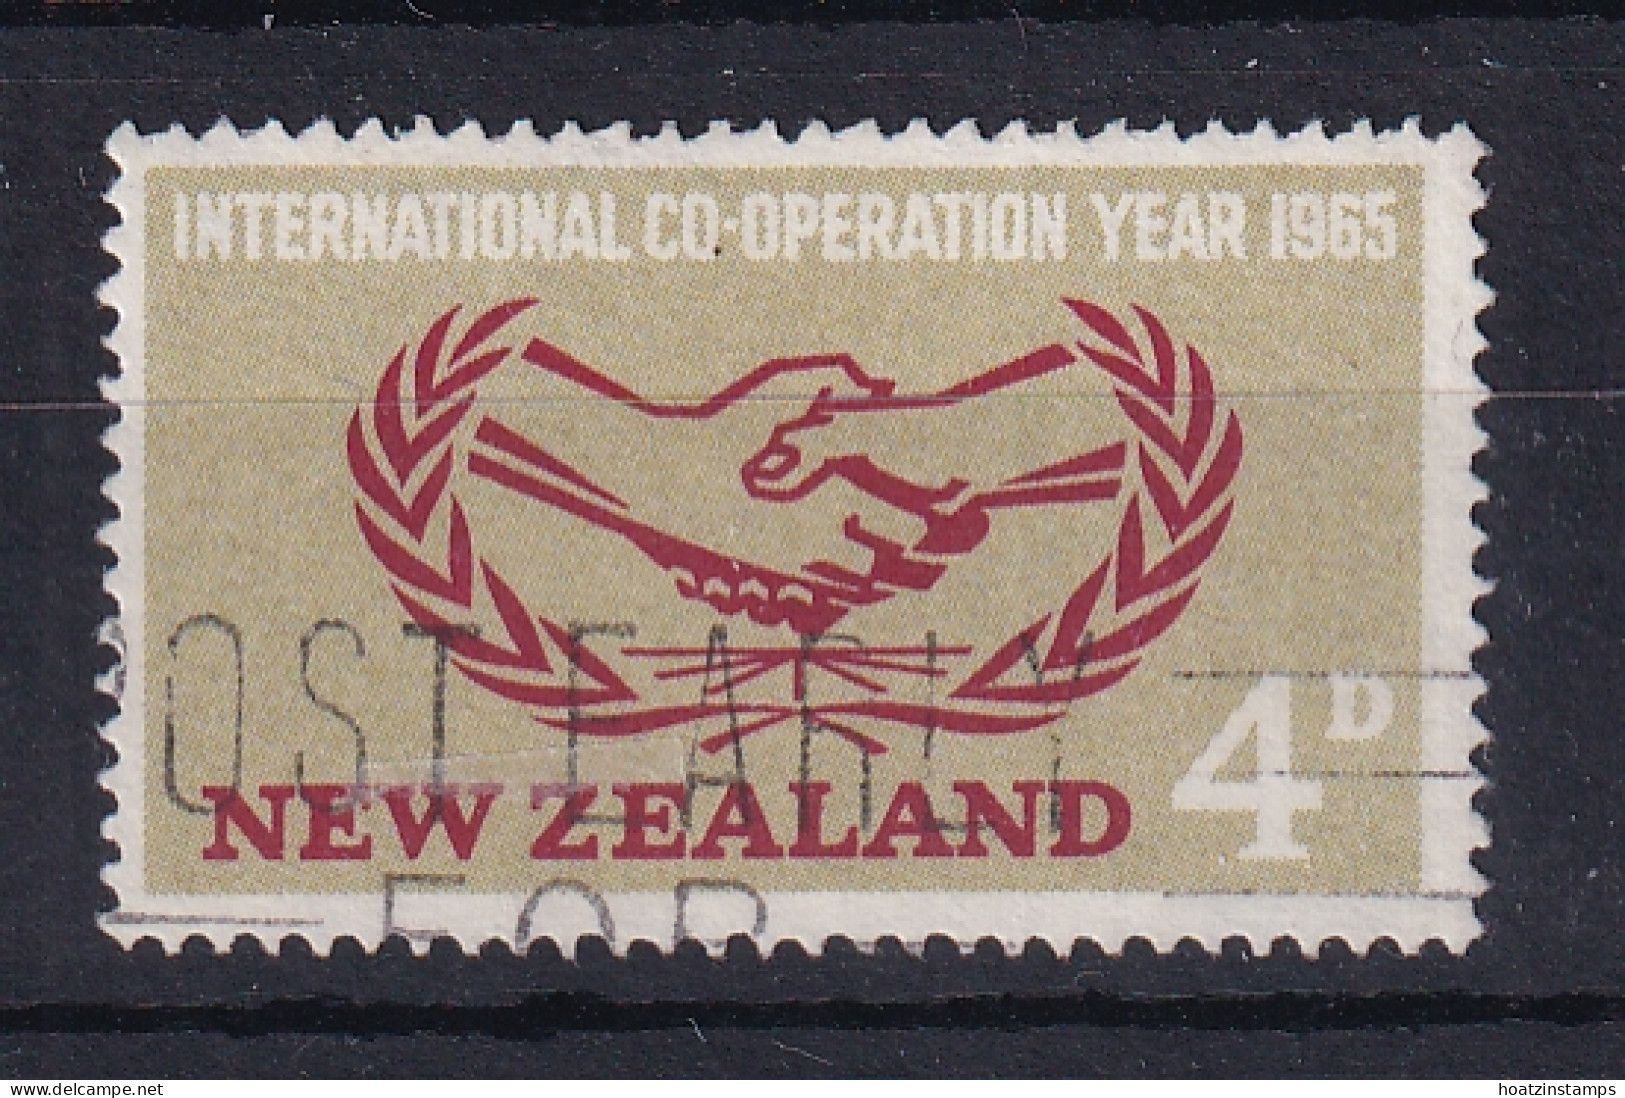 New Zealand: 1965   I. C. Y.   SG833w   [Wmk Sideways]  Used - Gebraucht